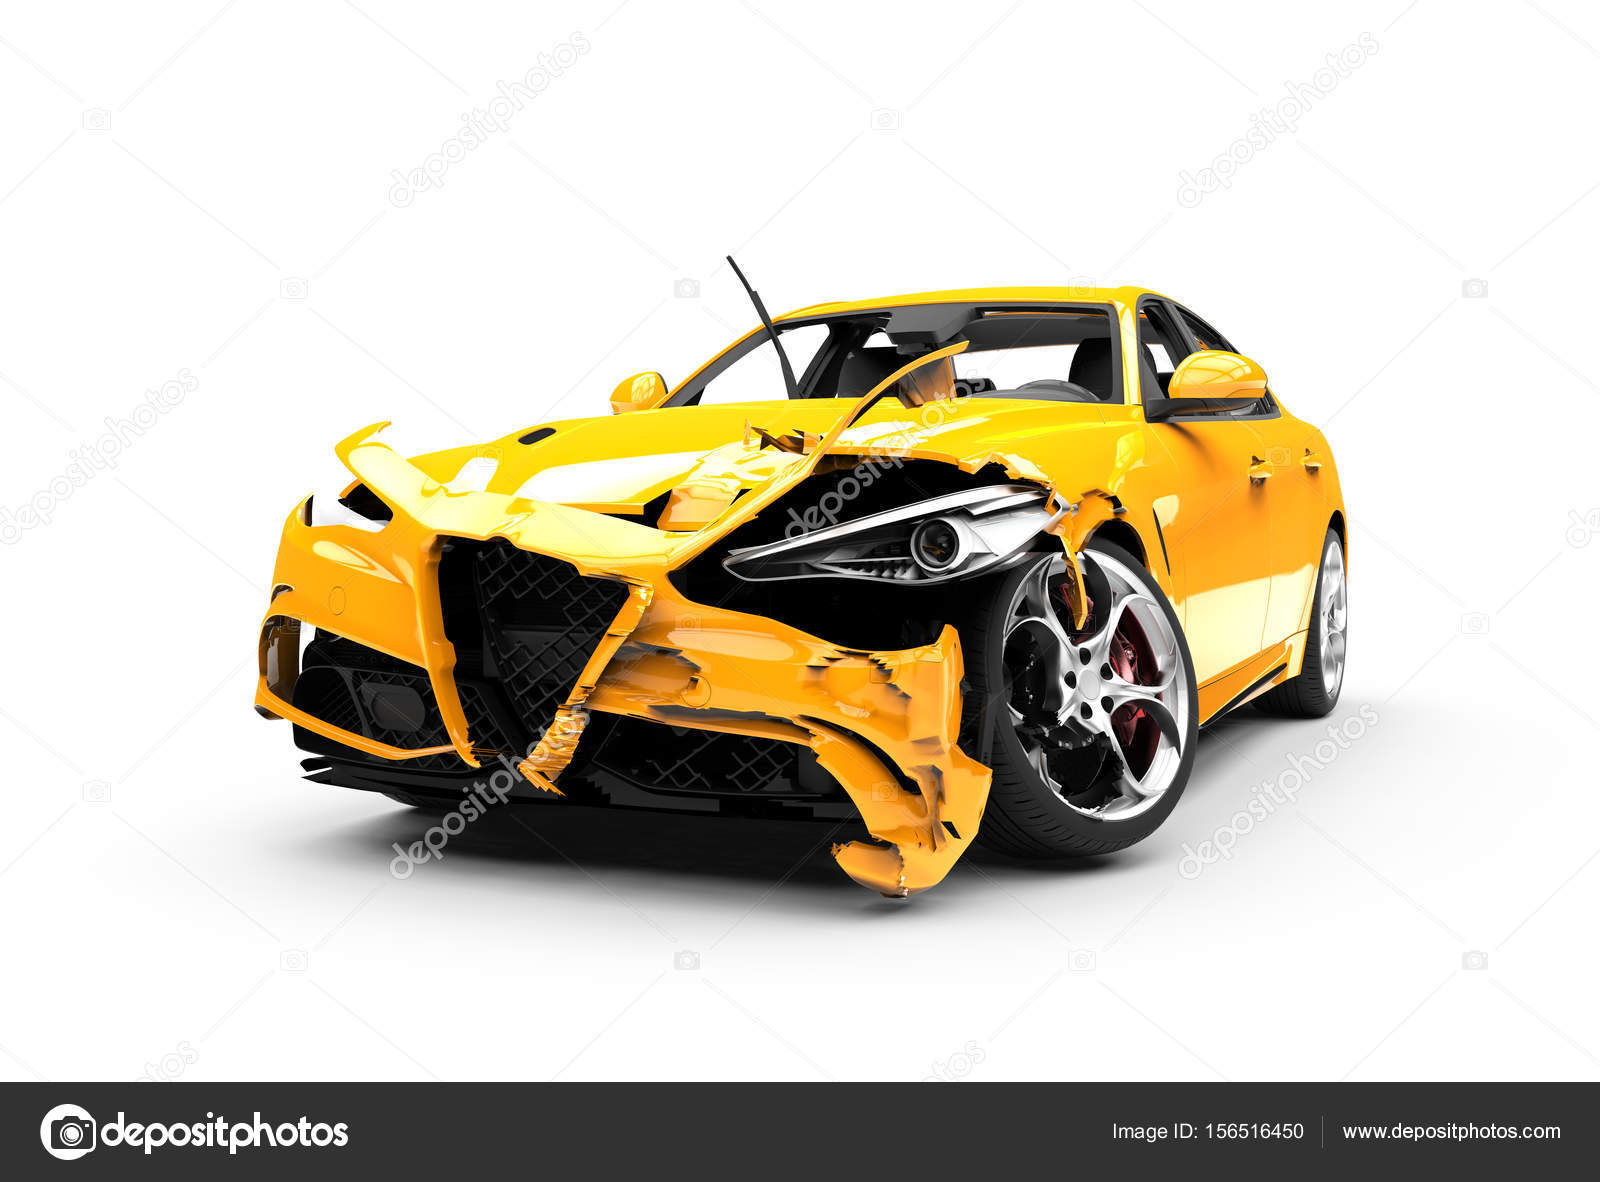 Trong tình huống xấu xa nhất, tai nạn xe lại càng đáng chú ý hơn. Cùng xem bức ảnh về một chiếc xe màu vàng bị đâm trên nền trắng tinh khôi, chắc chắn bạn sẽ bị thu hút bởi cảnh tượng đầy mê hoặc này.